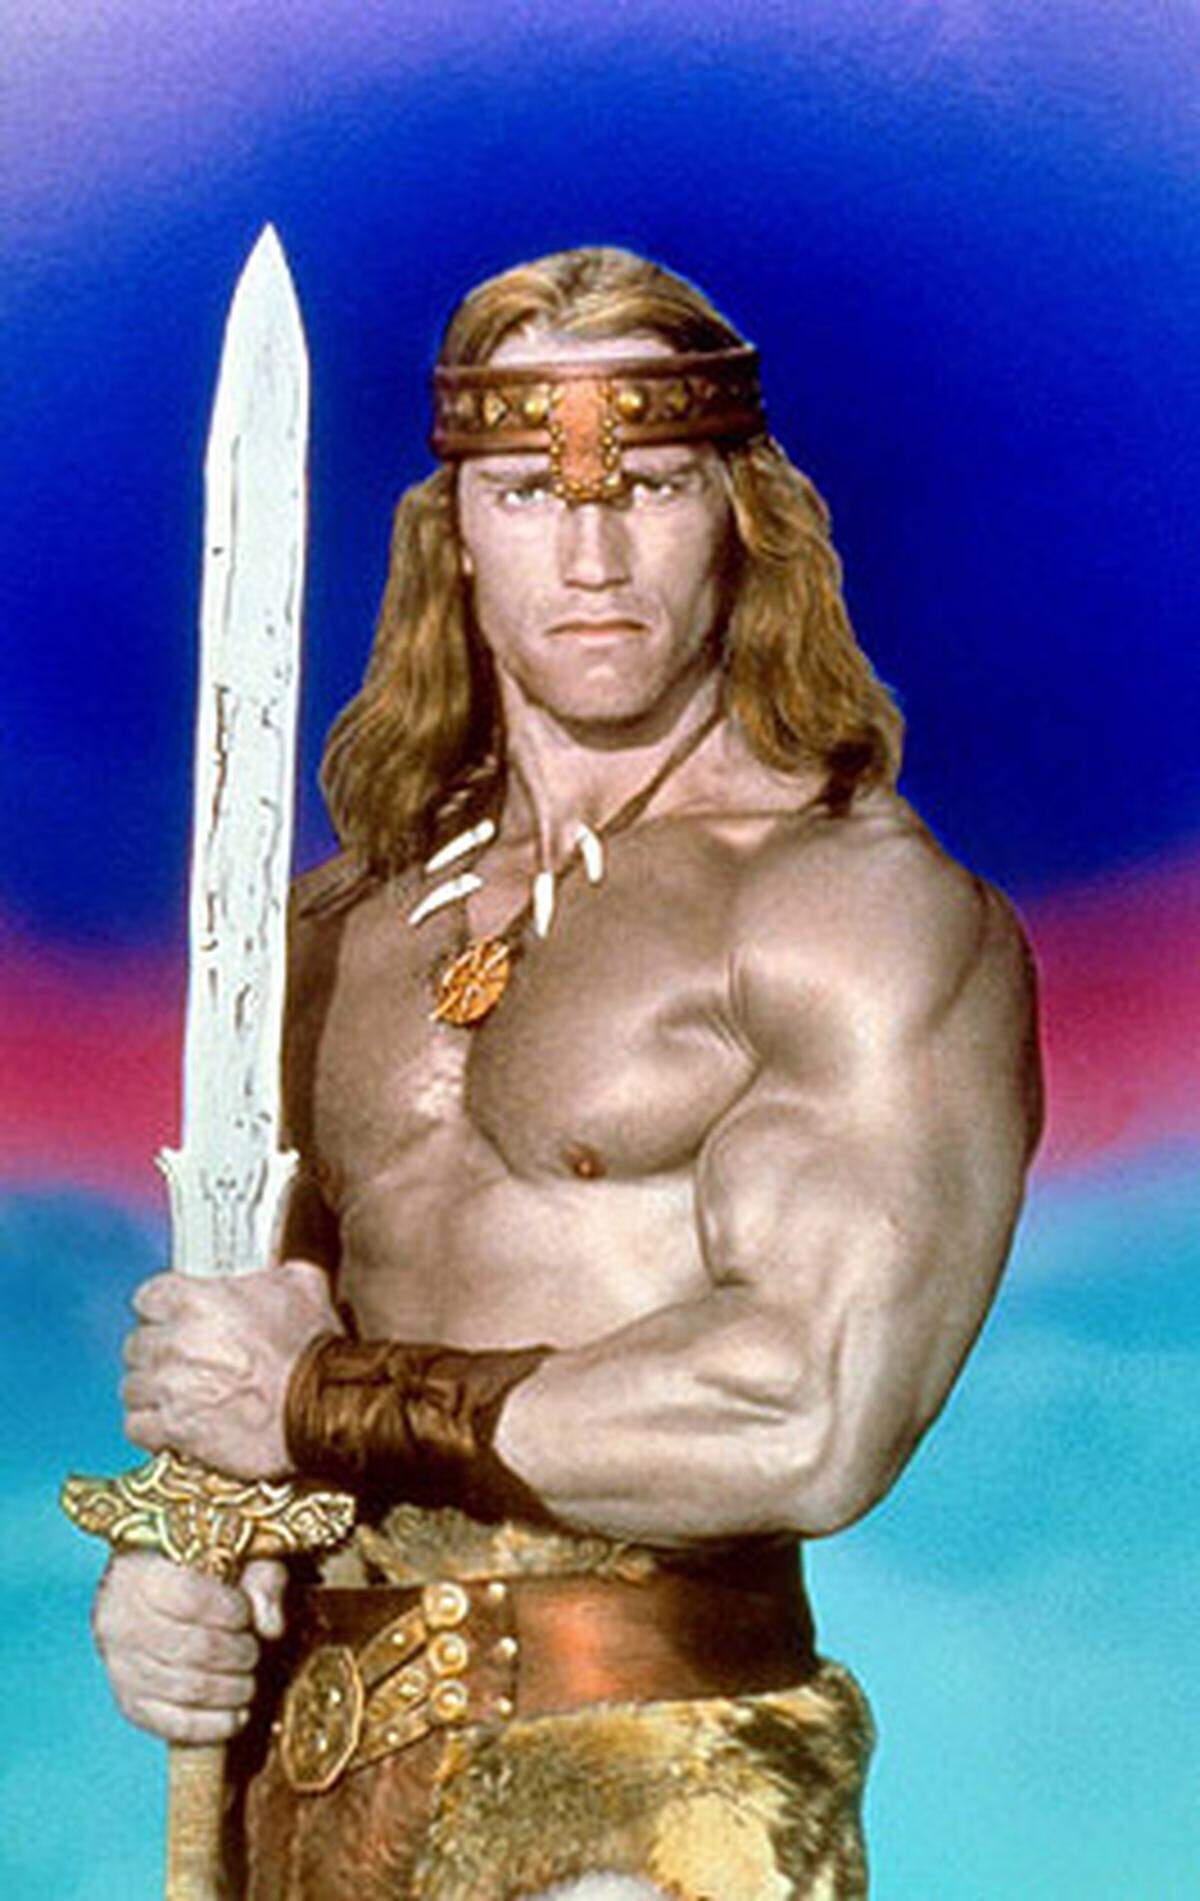 Sein Durchbruch als "Schauspieler" gelang der "steirischen Eiche" 1982 mit dem Sandalen-Schinken "Conan der Barbar" und dessen Fortsetzung "Conan der Zerstörer". Entlohnt wurde er dafür mit fürstlichen 250.000 Dollar - pro Film.